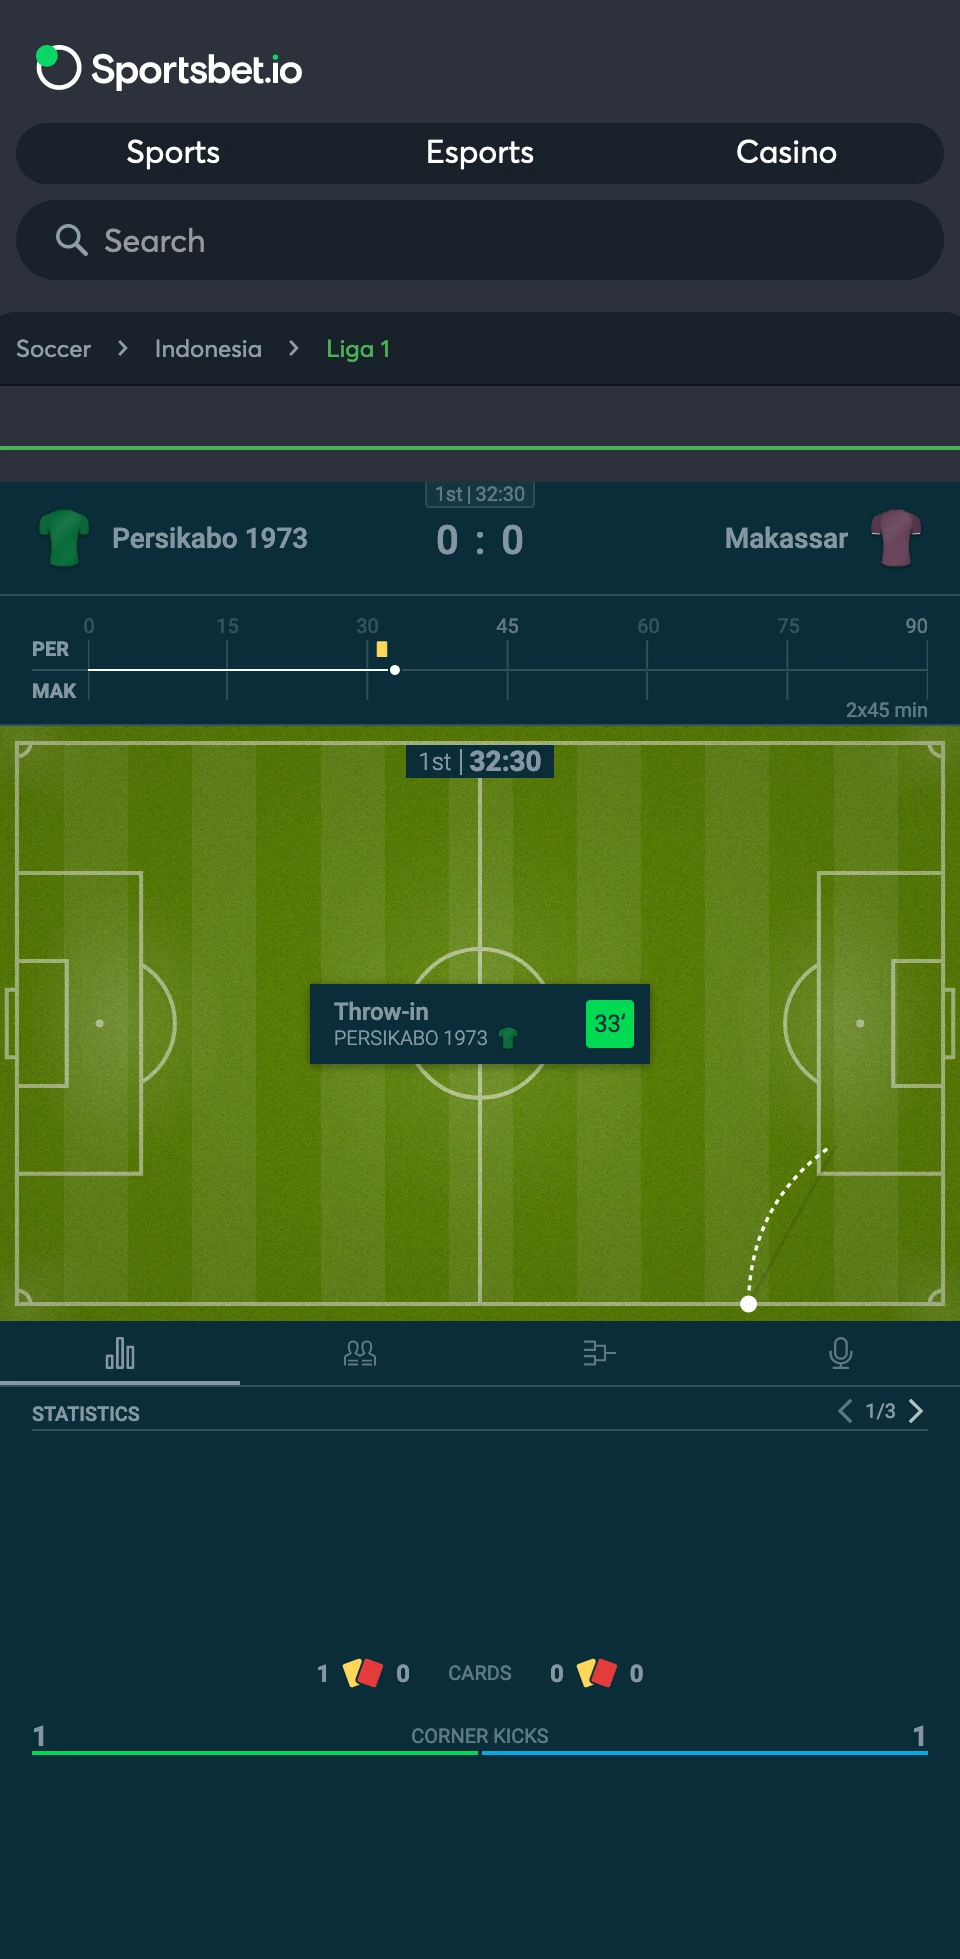 Sportsbetio ऐप उपयोगकर्ता को मैच के विस्तृत आँकड़े प्रदान करता है